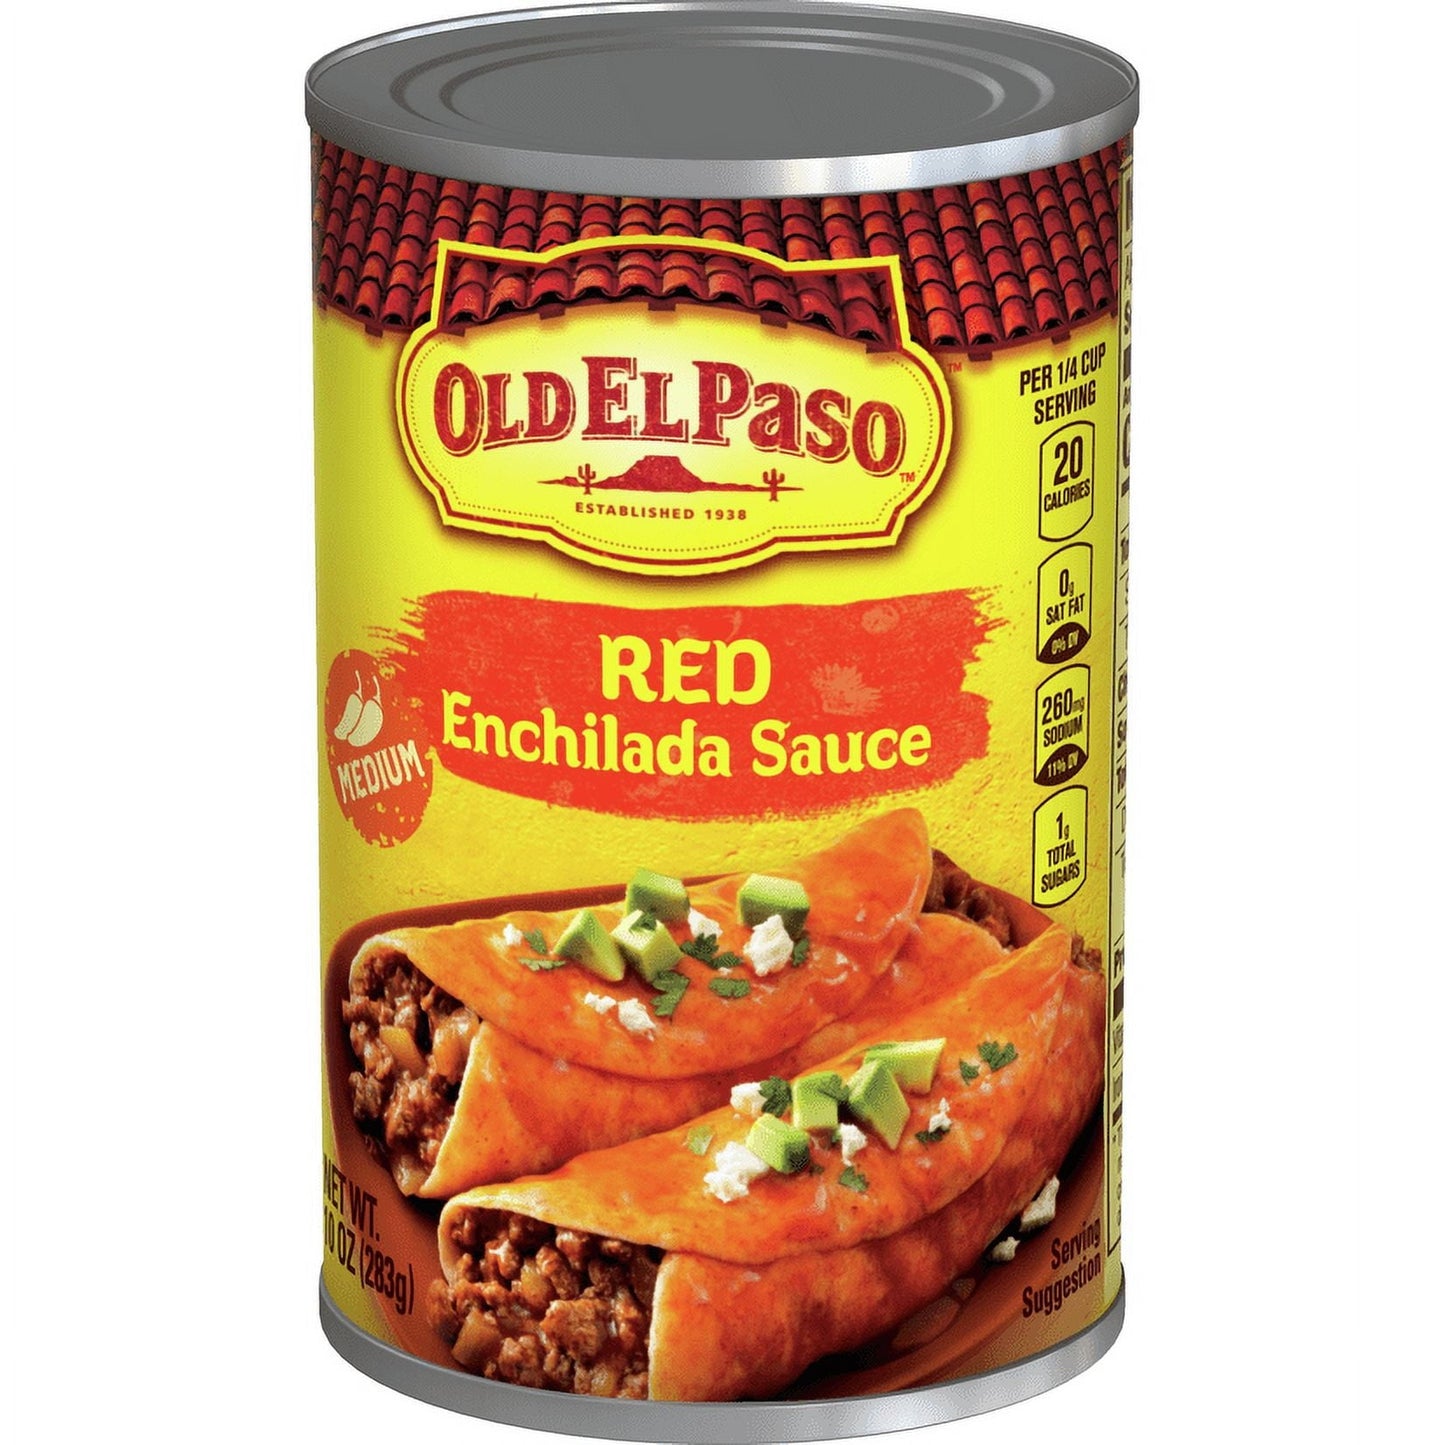 Old El Paso Medium Red Enchilada Sauce, 1 Ct., 10 oz.